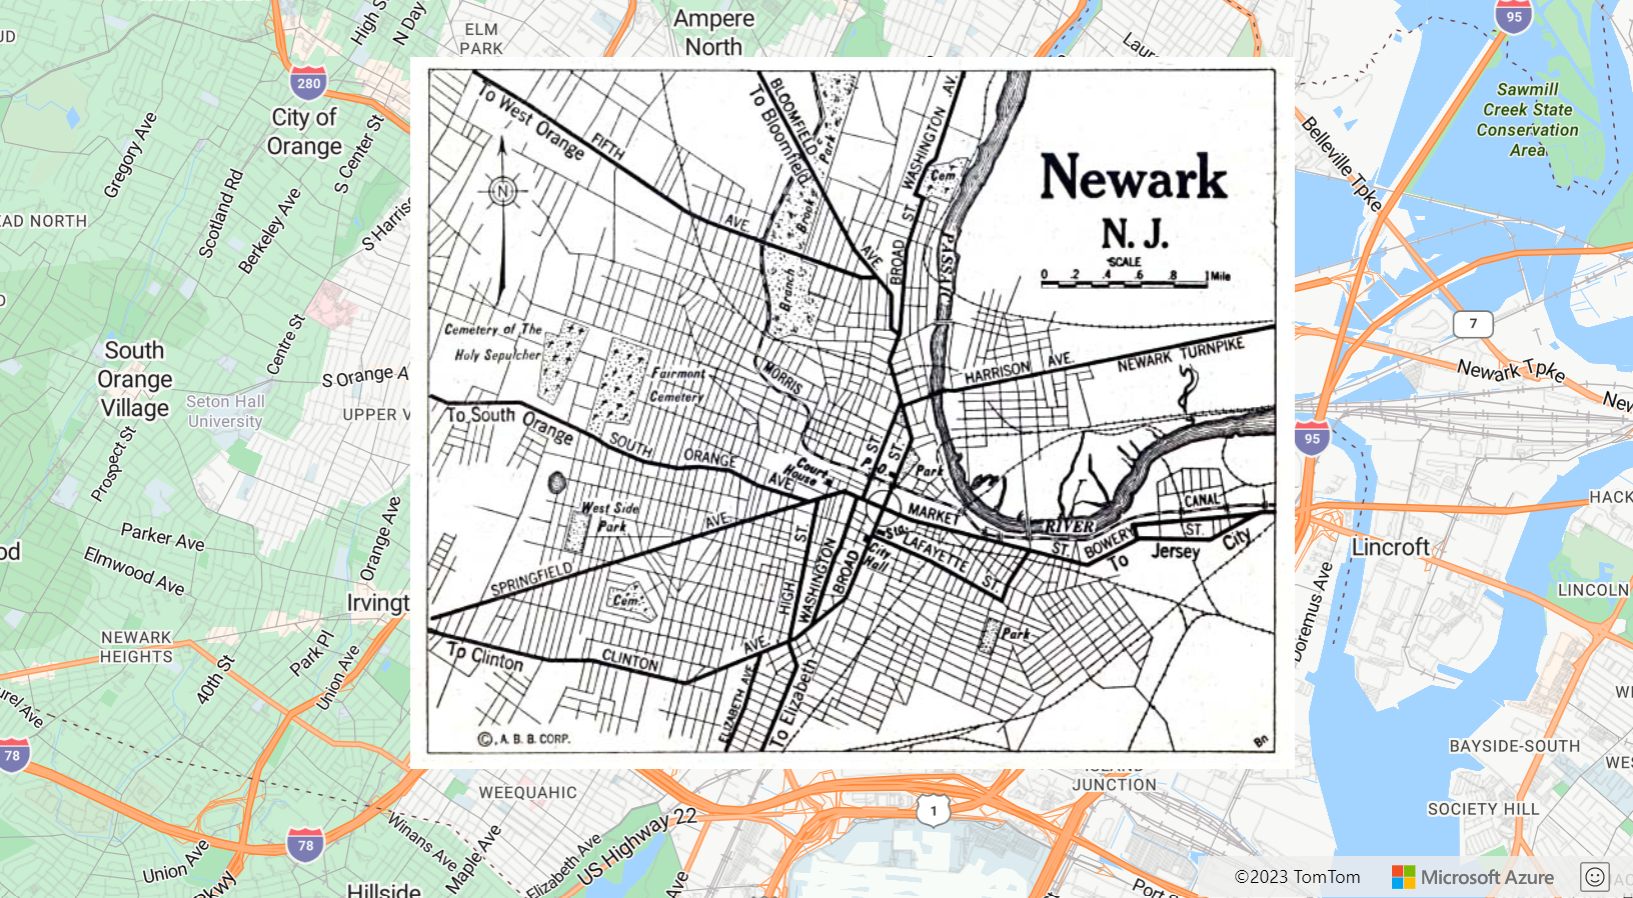 Snímek obrazovky znázorňující mapu s obrázkem mapy Newark New Jersey z roku 1922 ve vrstvě image